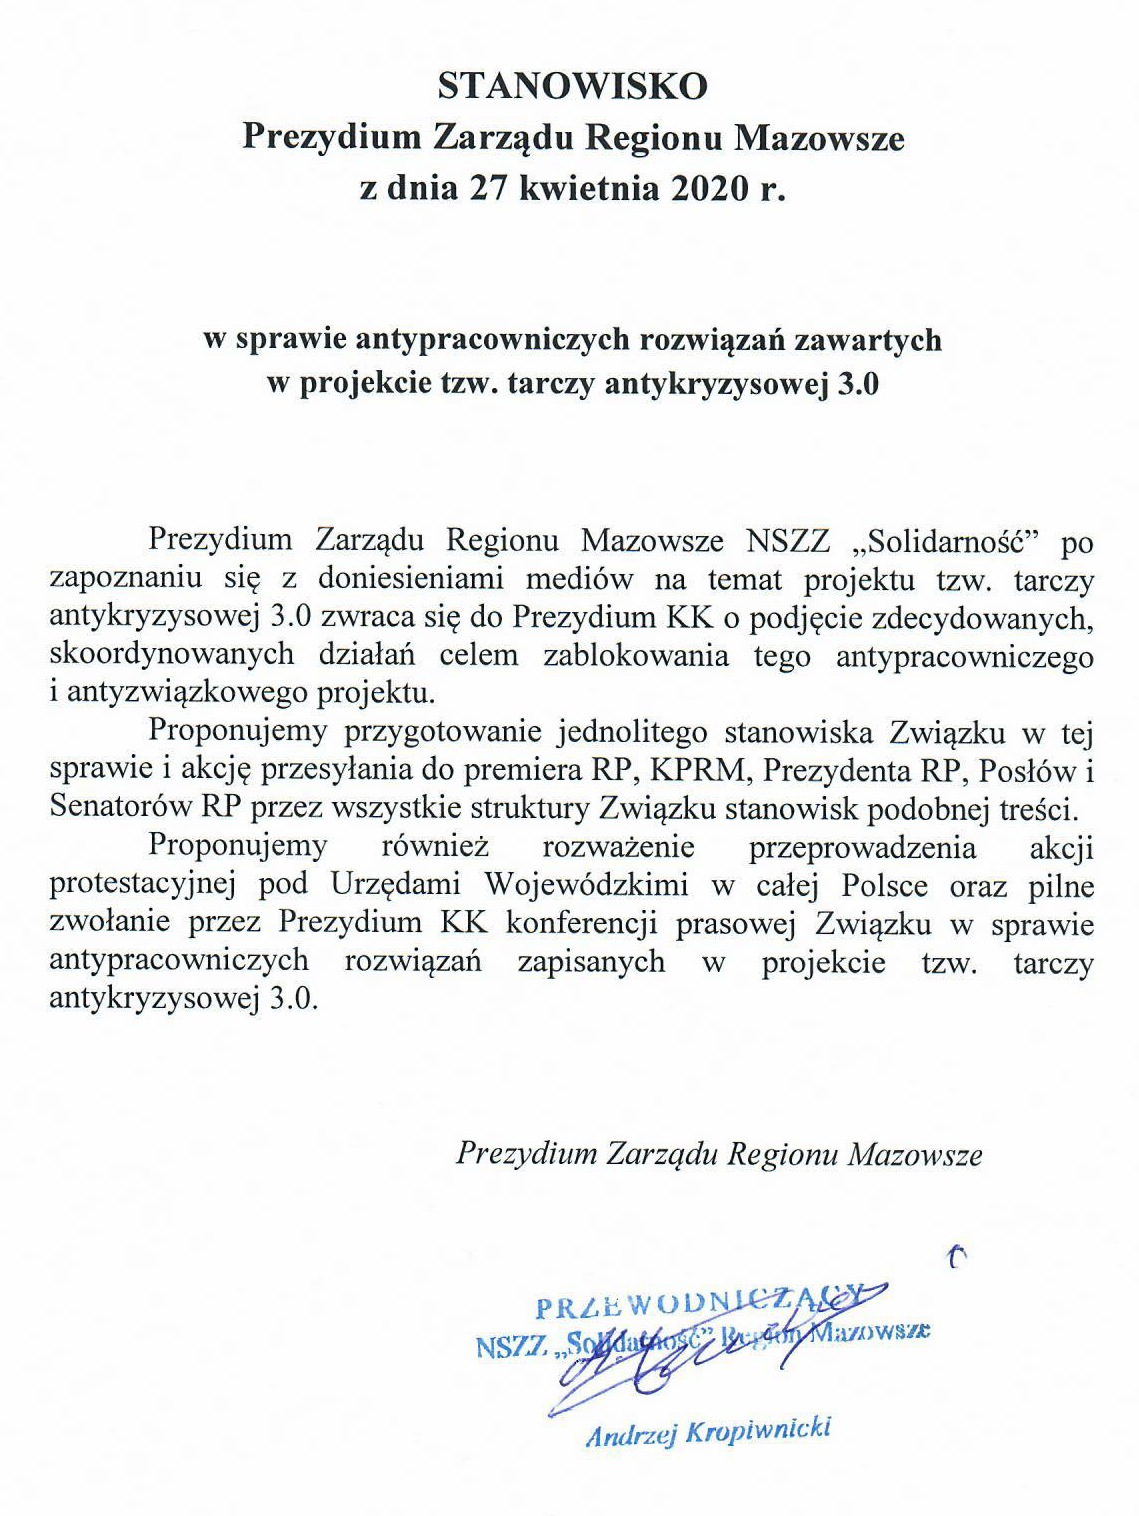 Stanowisko Prezydium ZRMazowsze 27.04.2020